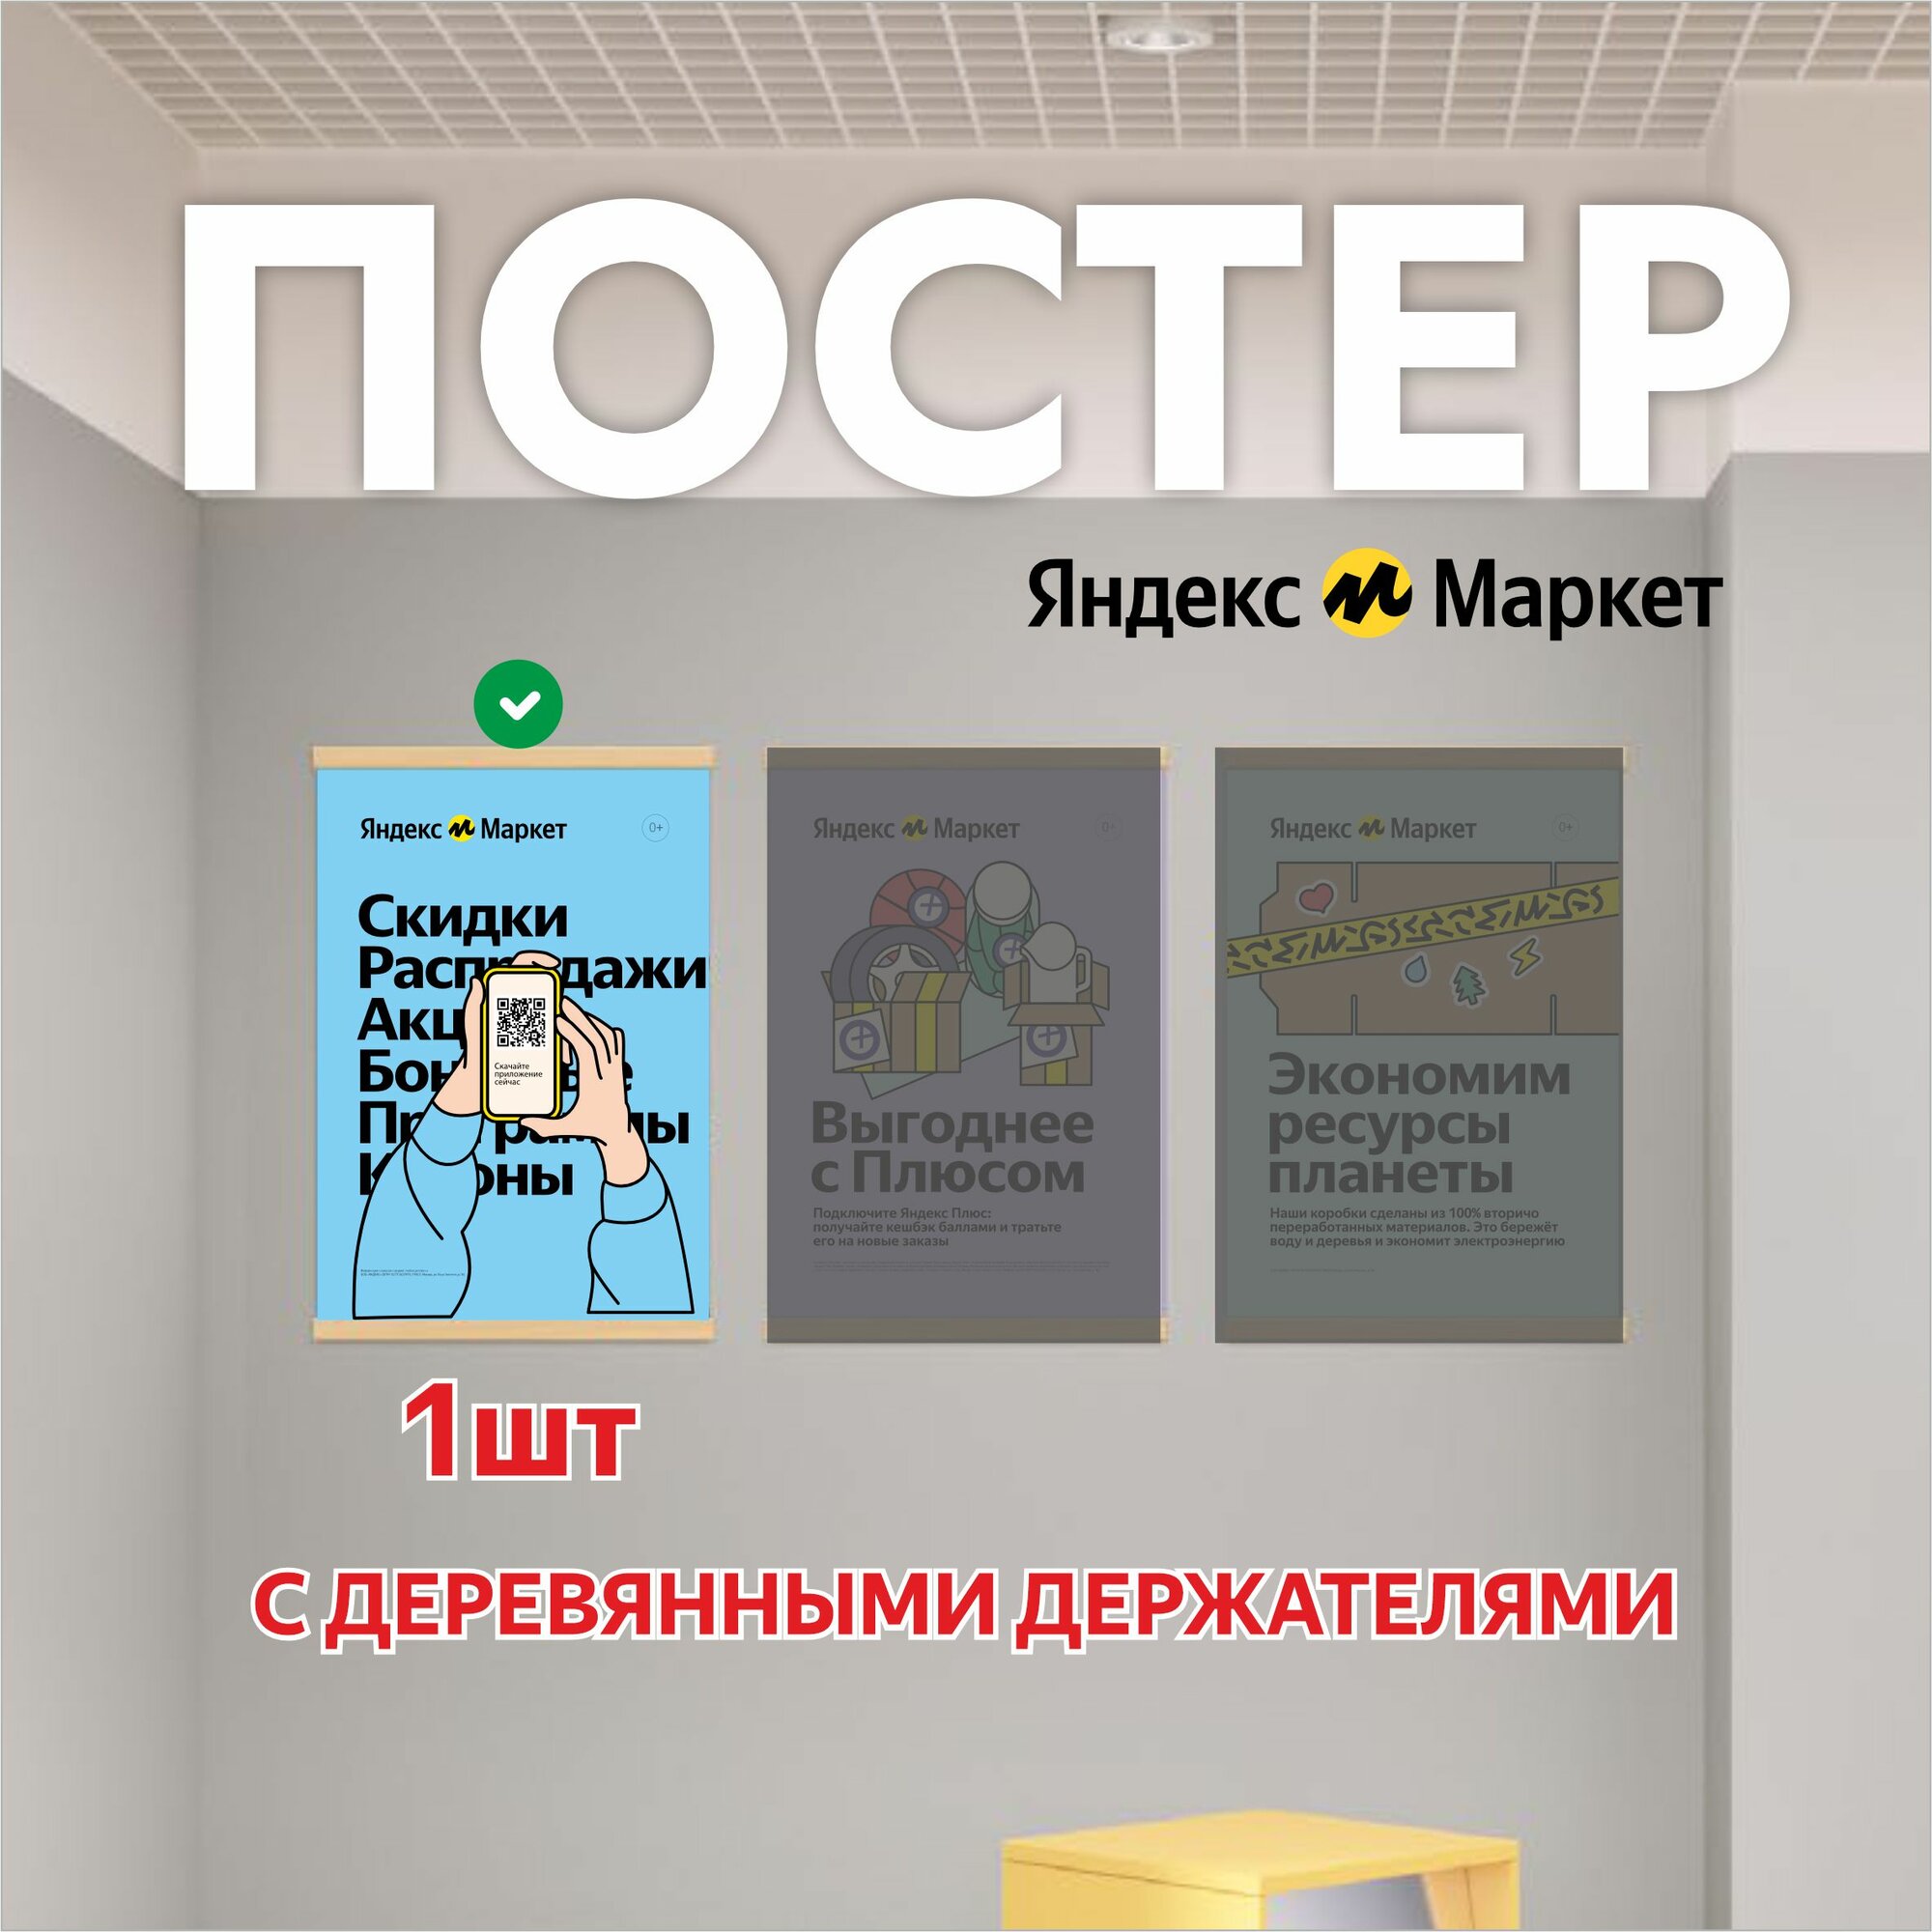 Постер 1шт с деревянными рейками для Яндекс Маркет ПВЗ (Скидки распродажи)